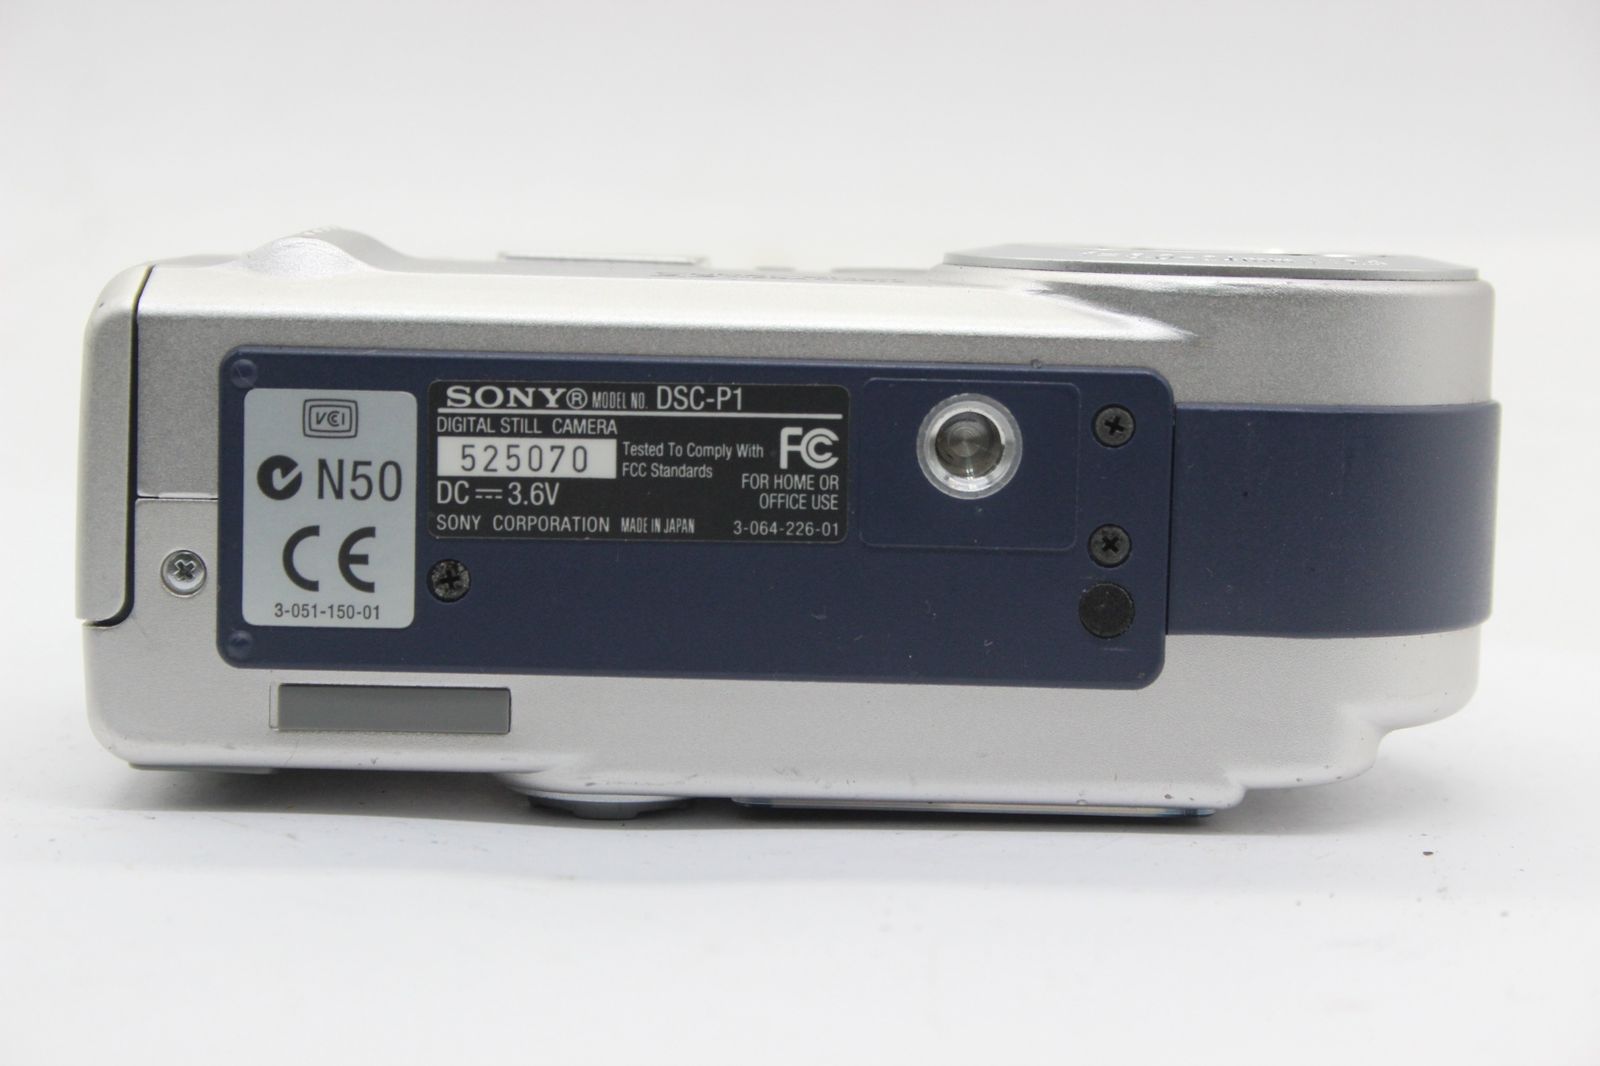 【返品保証】 ソニー SONY Cyber-shot DSC-P1 6x バッテリー付き コンパクトデジタルカメラ s9914